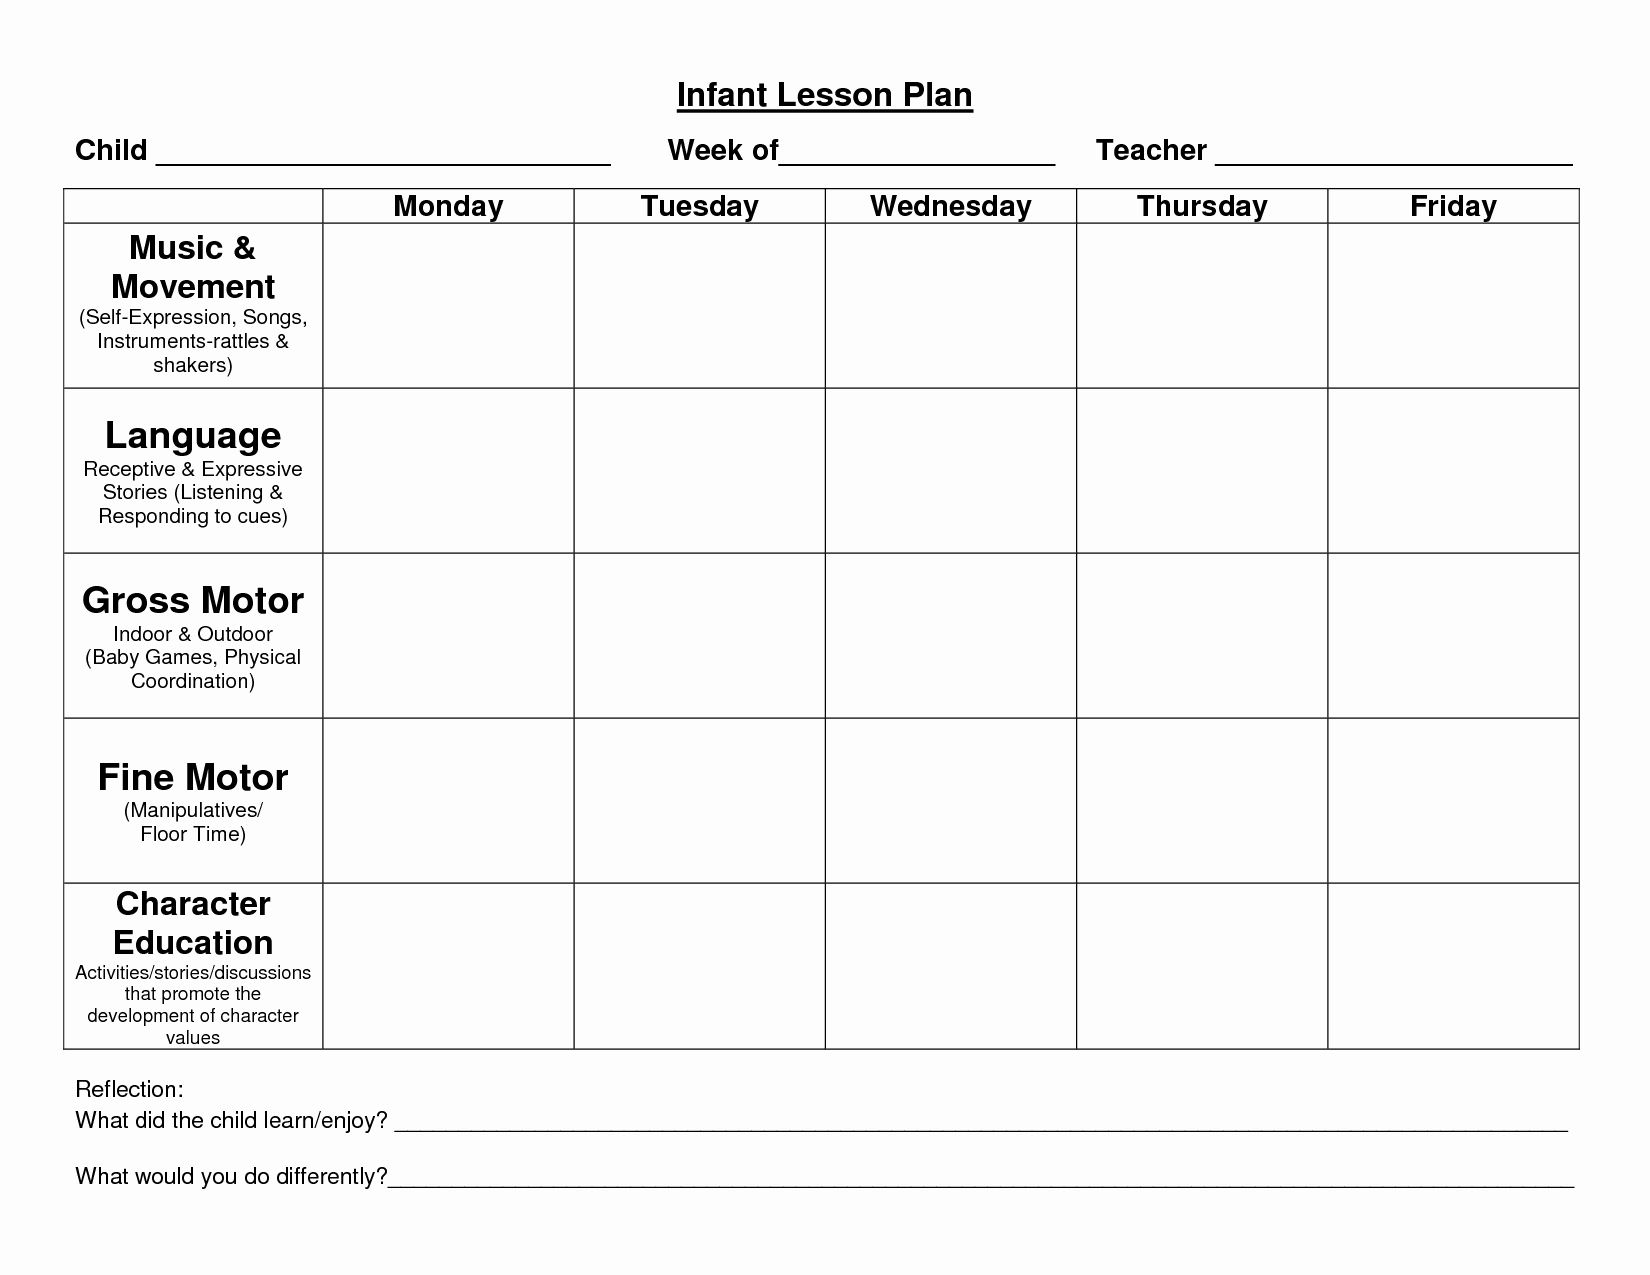 calendar-lesson-plan-template-example-calendar-printable